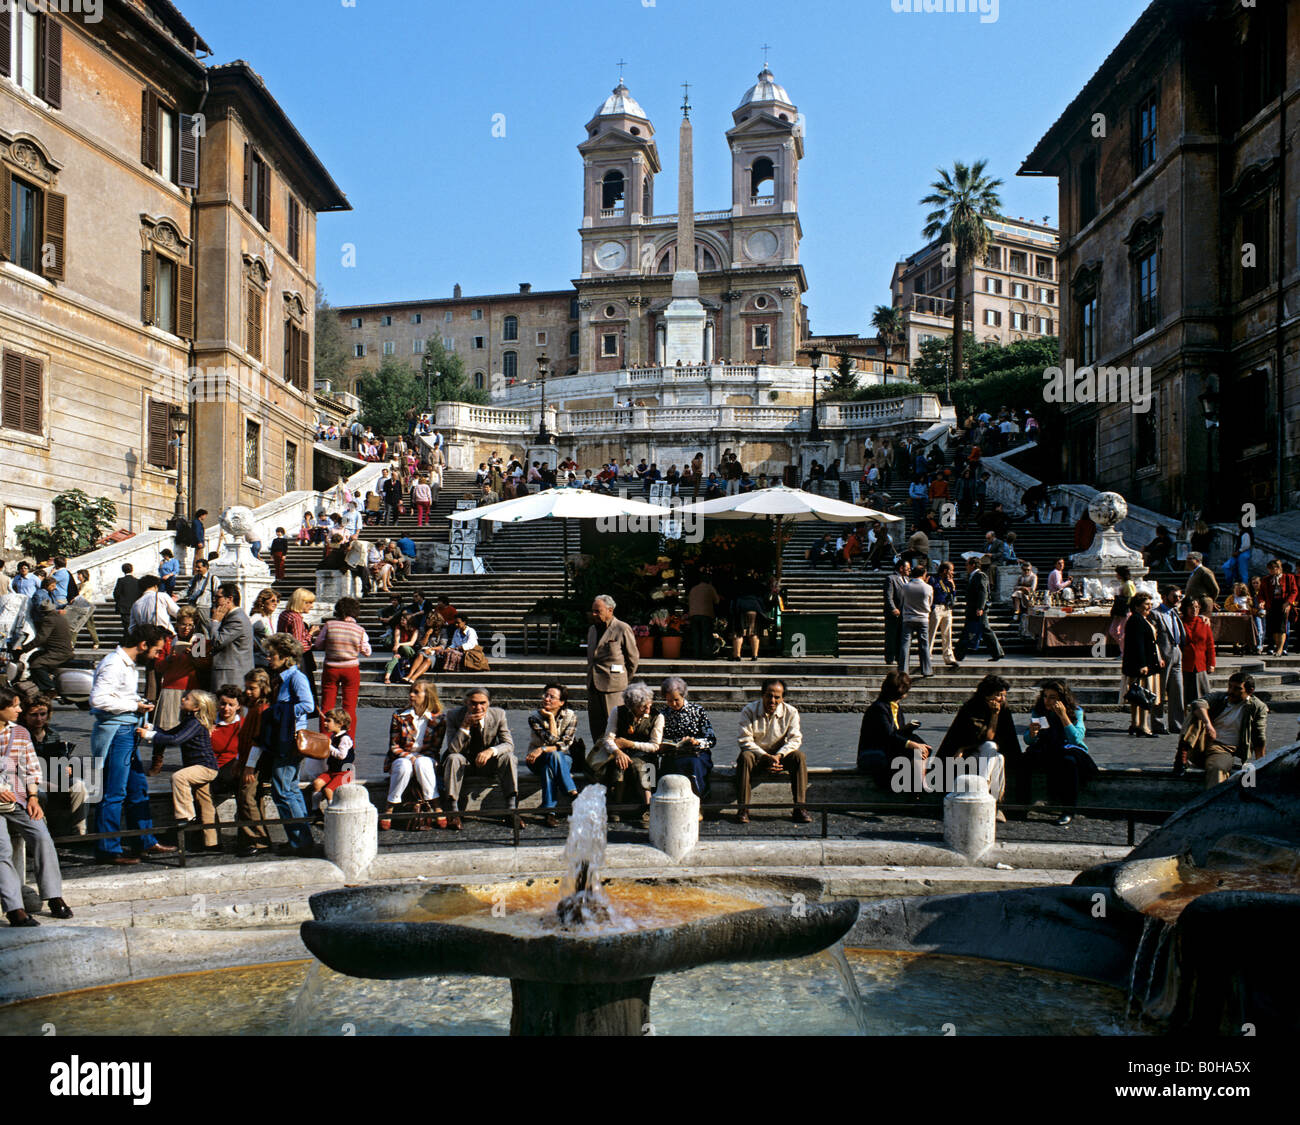 Spanish Steps, Piazza di Spagna, Fontana della Barcaccia fountain, Santa Trinita Church, Rome, Italy Stock Photo